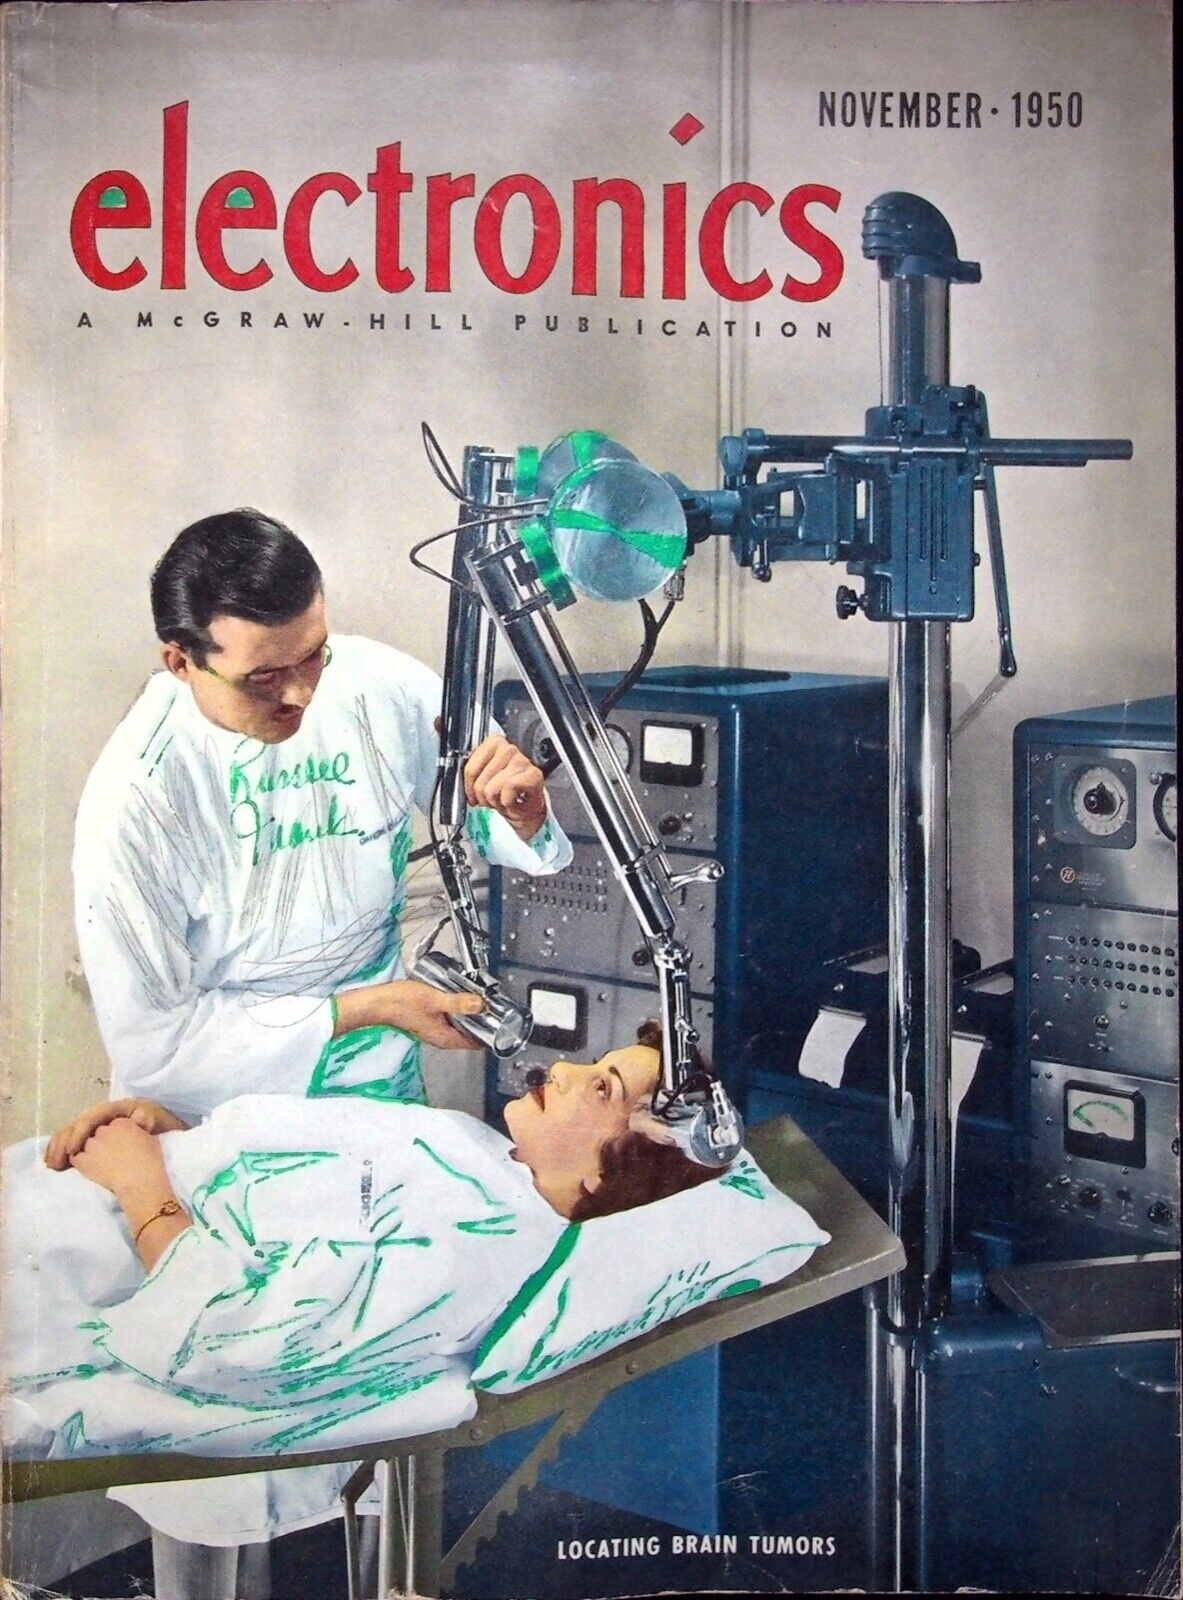 LOCATING BRAIN TUMORS - ELECTRONICS PUBLICATION VINTAGE MAGAZINE NOVEMBER 1950